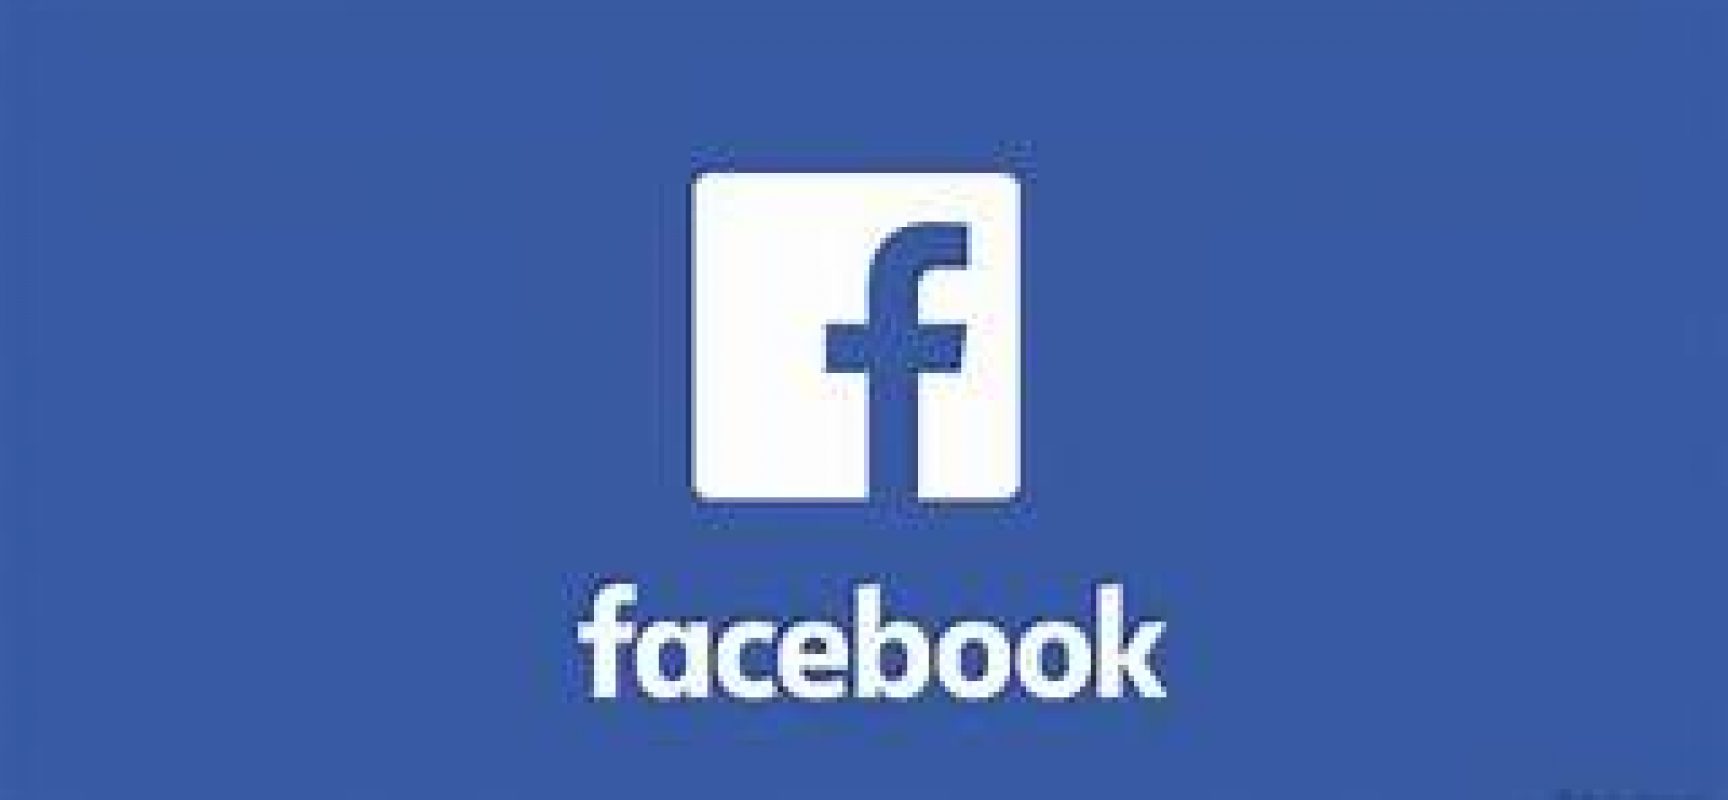 Alemanha restringe coleta de dados de usuários do Facebook no país